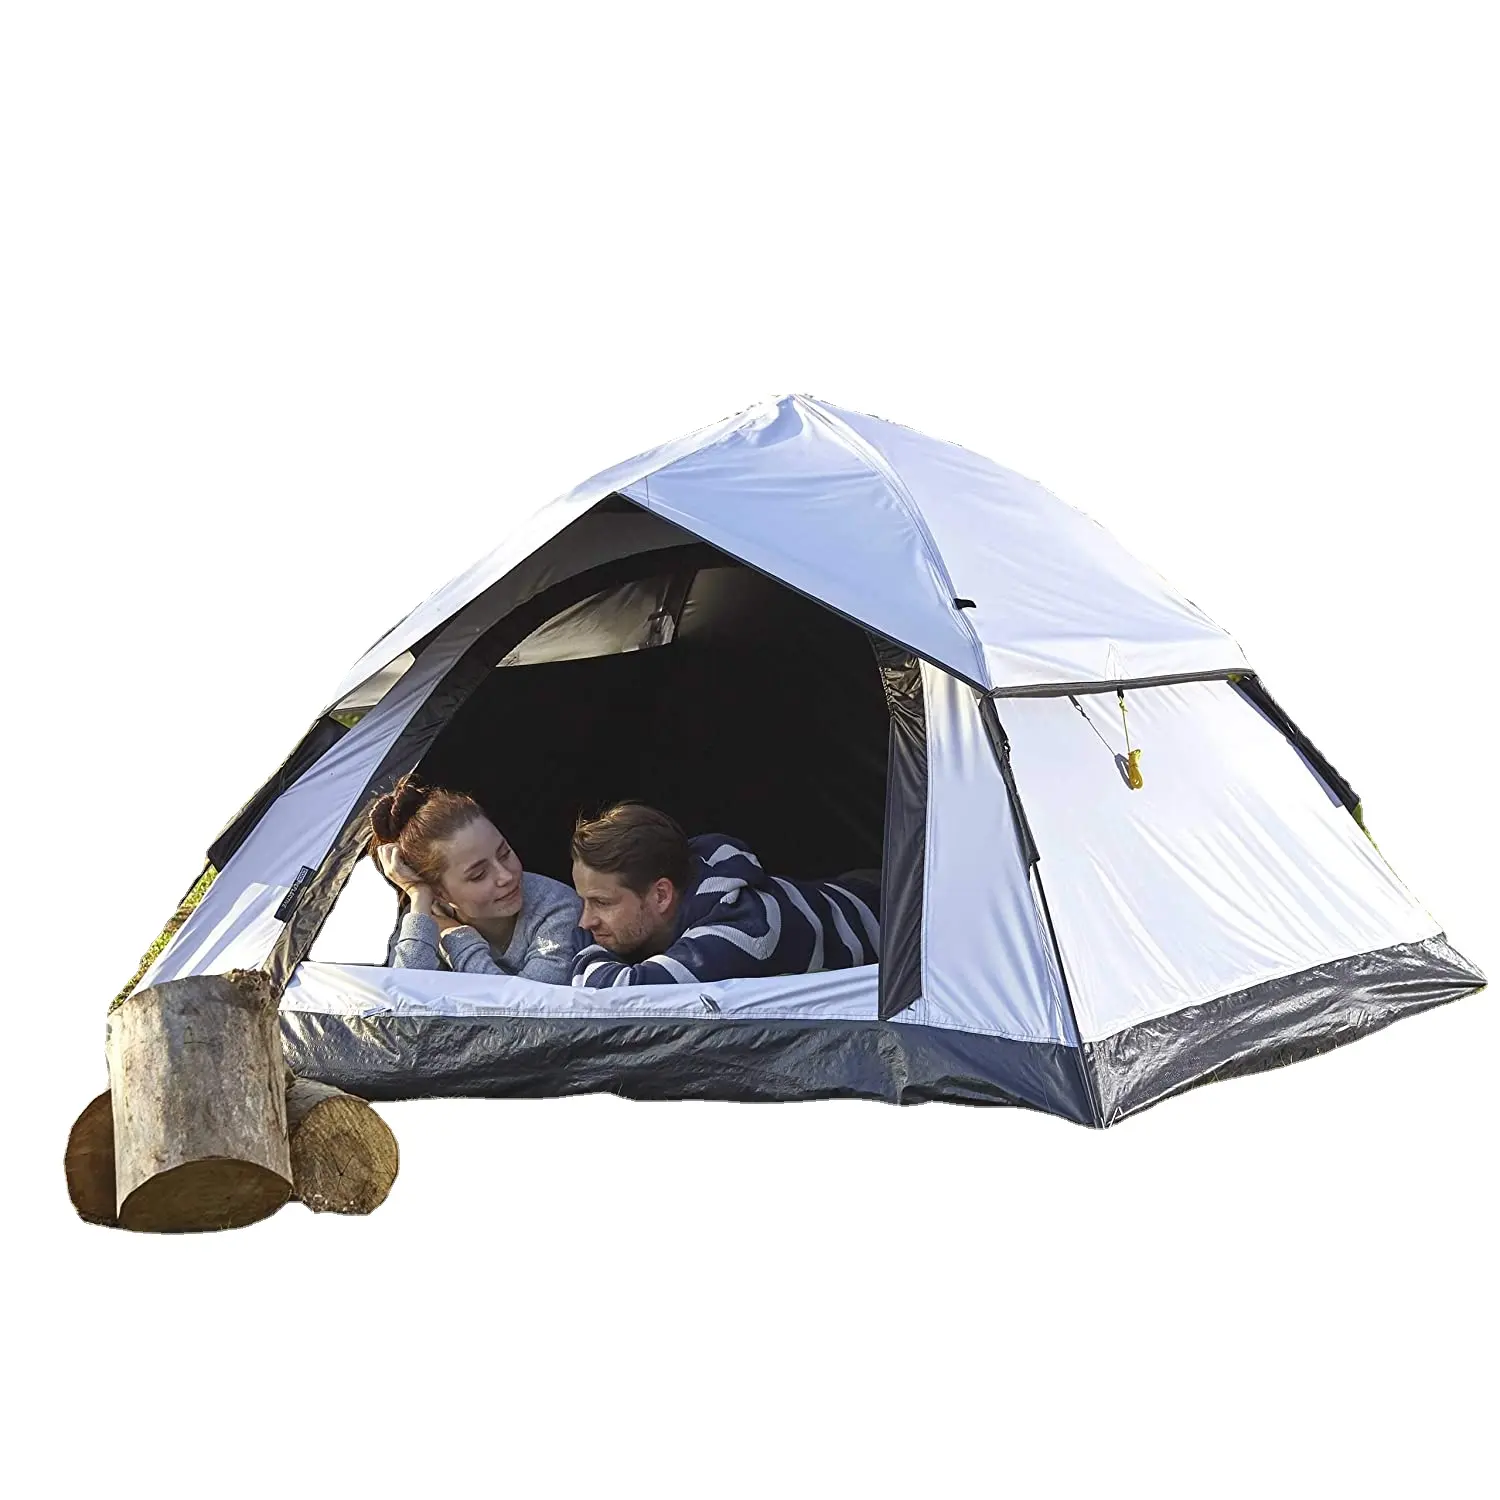 Tente Pop Up d'extérieur légère pour 3 personnes, deuxième tente, Camping, Festival, sac de transport, 210x190x110 cm